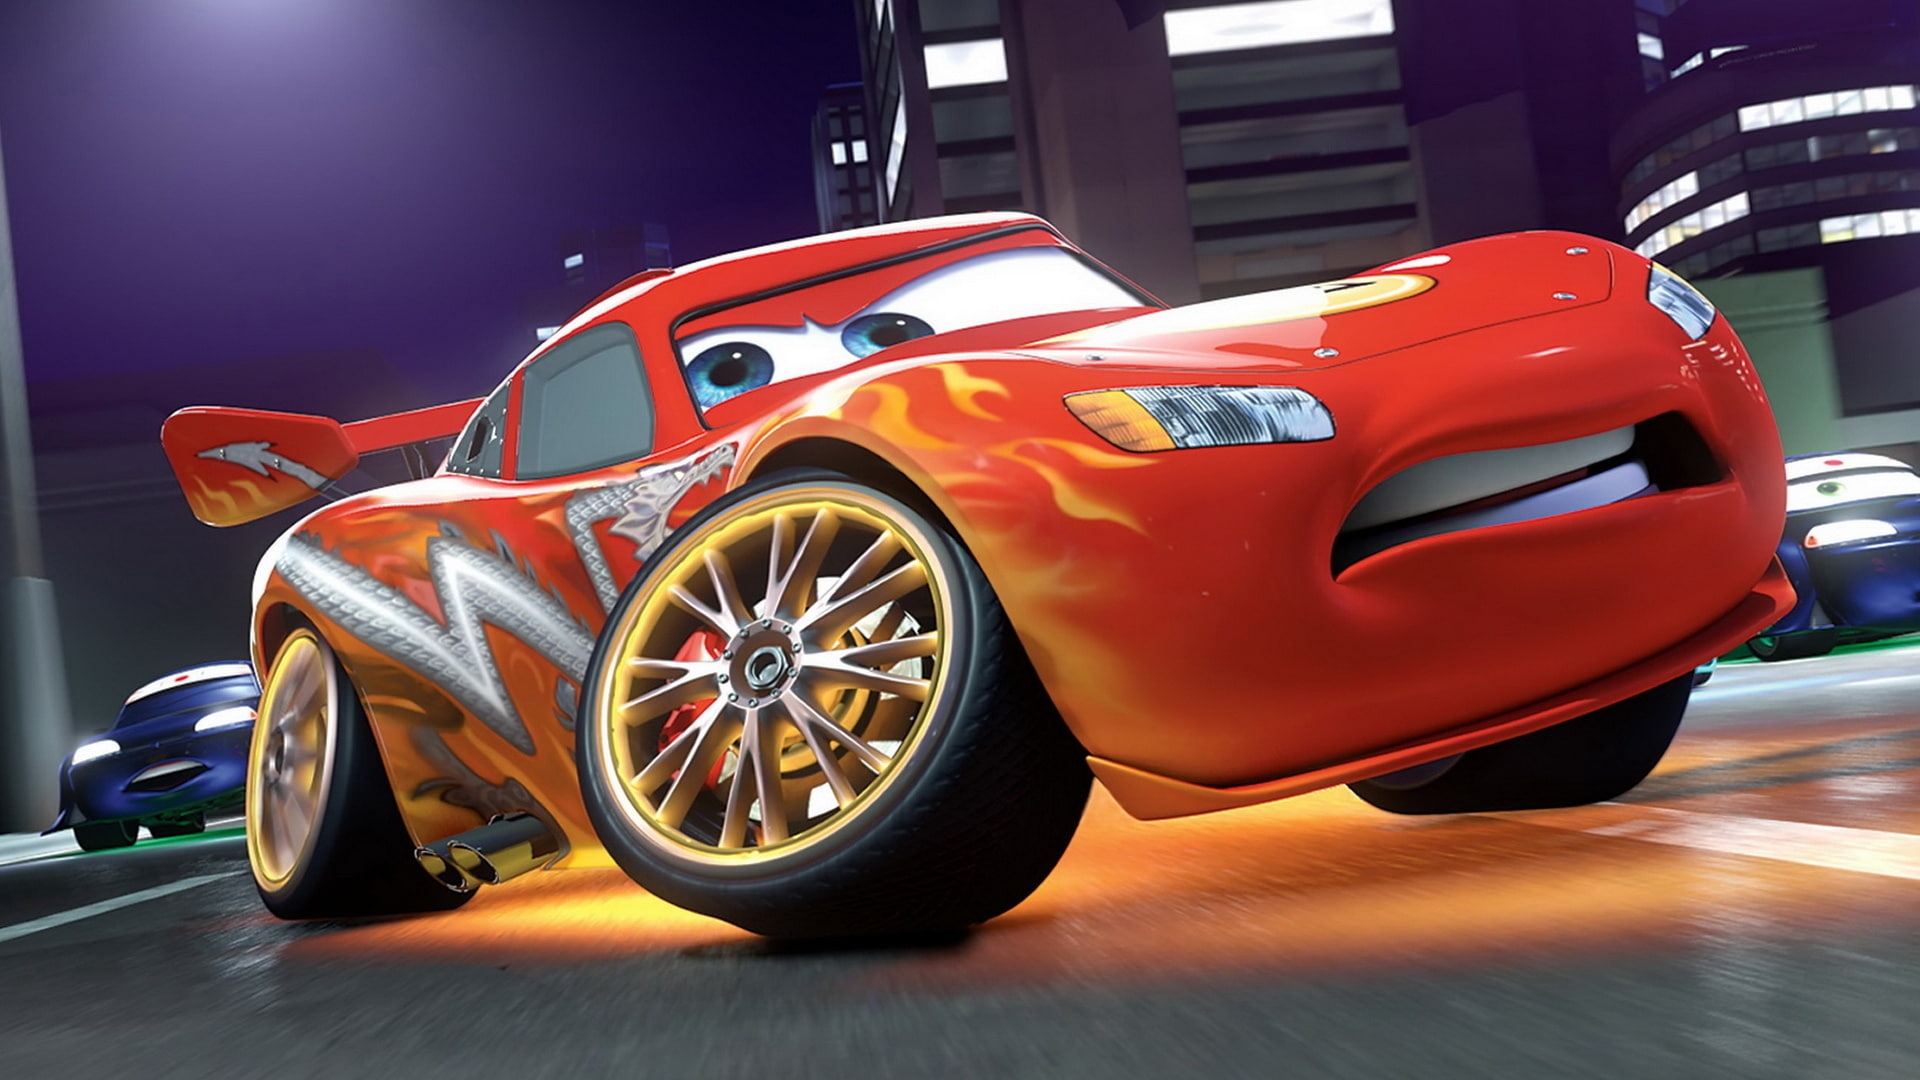 Lightning McQueen in Cars 2